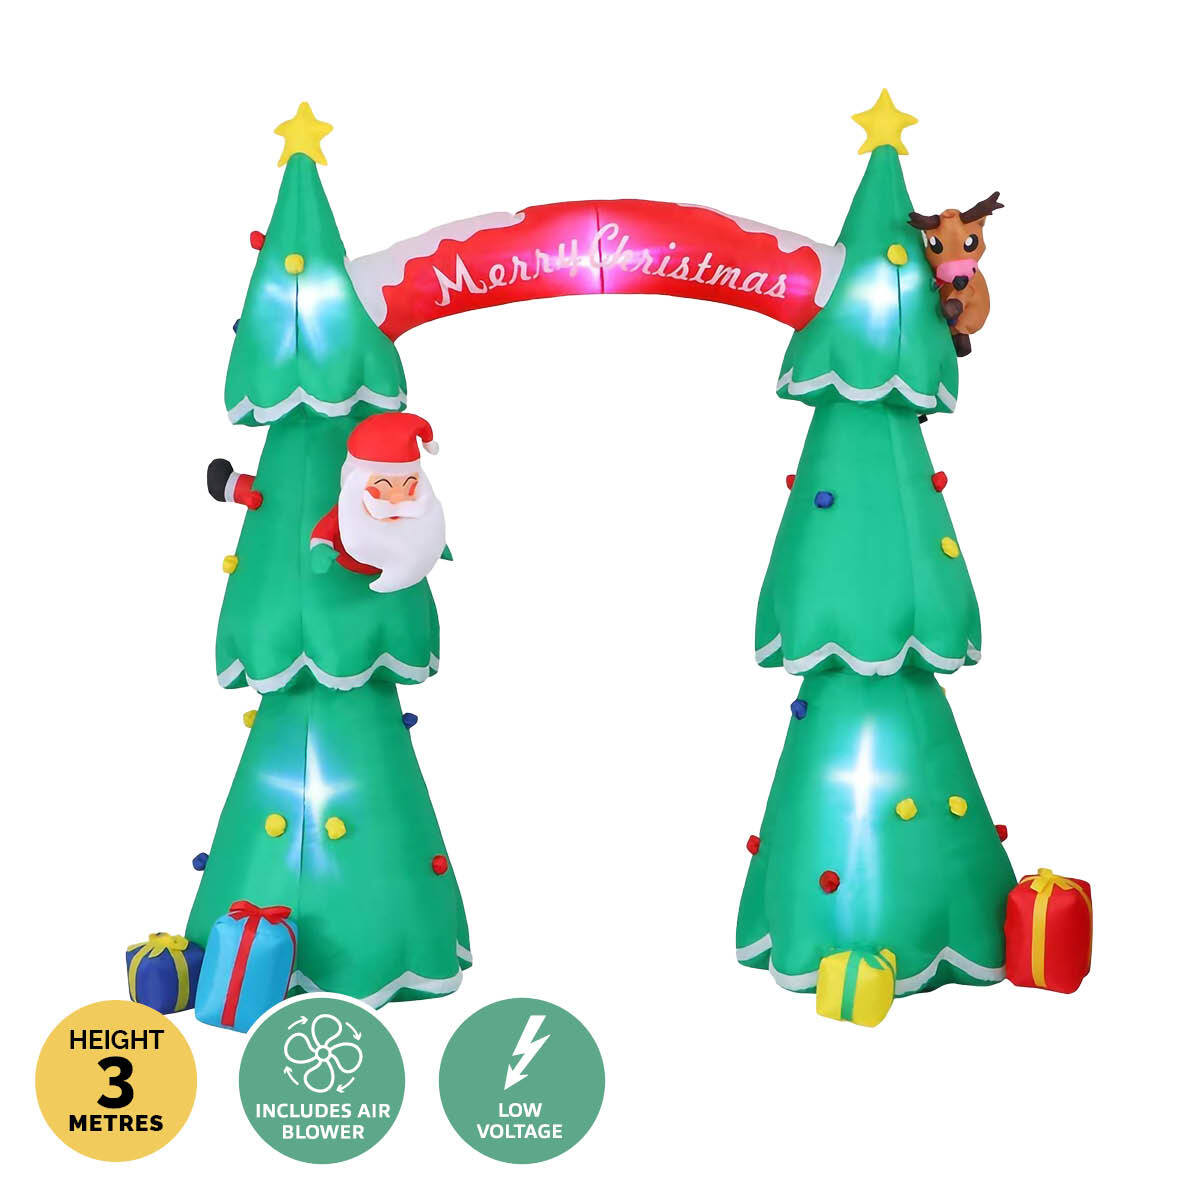 Christmas By Sas 3m x 2.4m Christmas Tree Arch Self Inflating LED Lights - SILBERSHELL